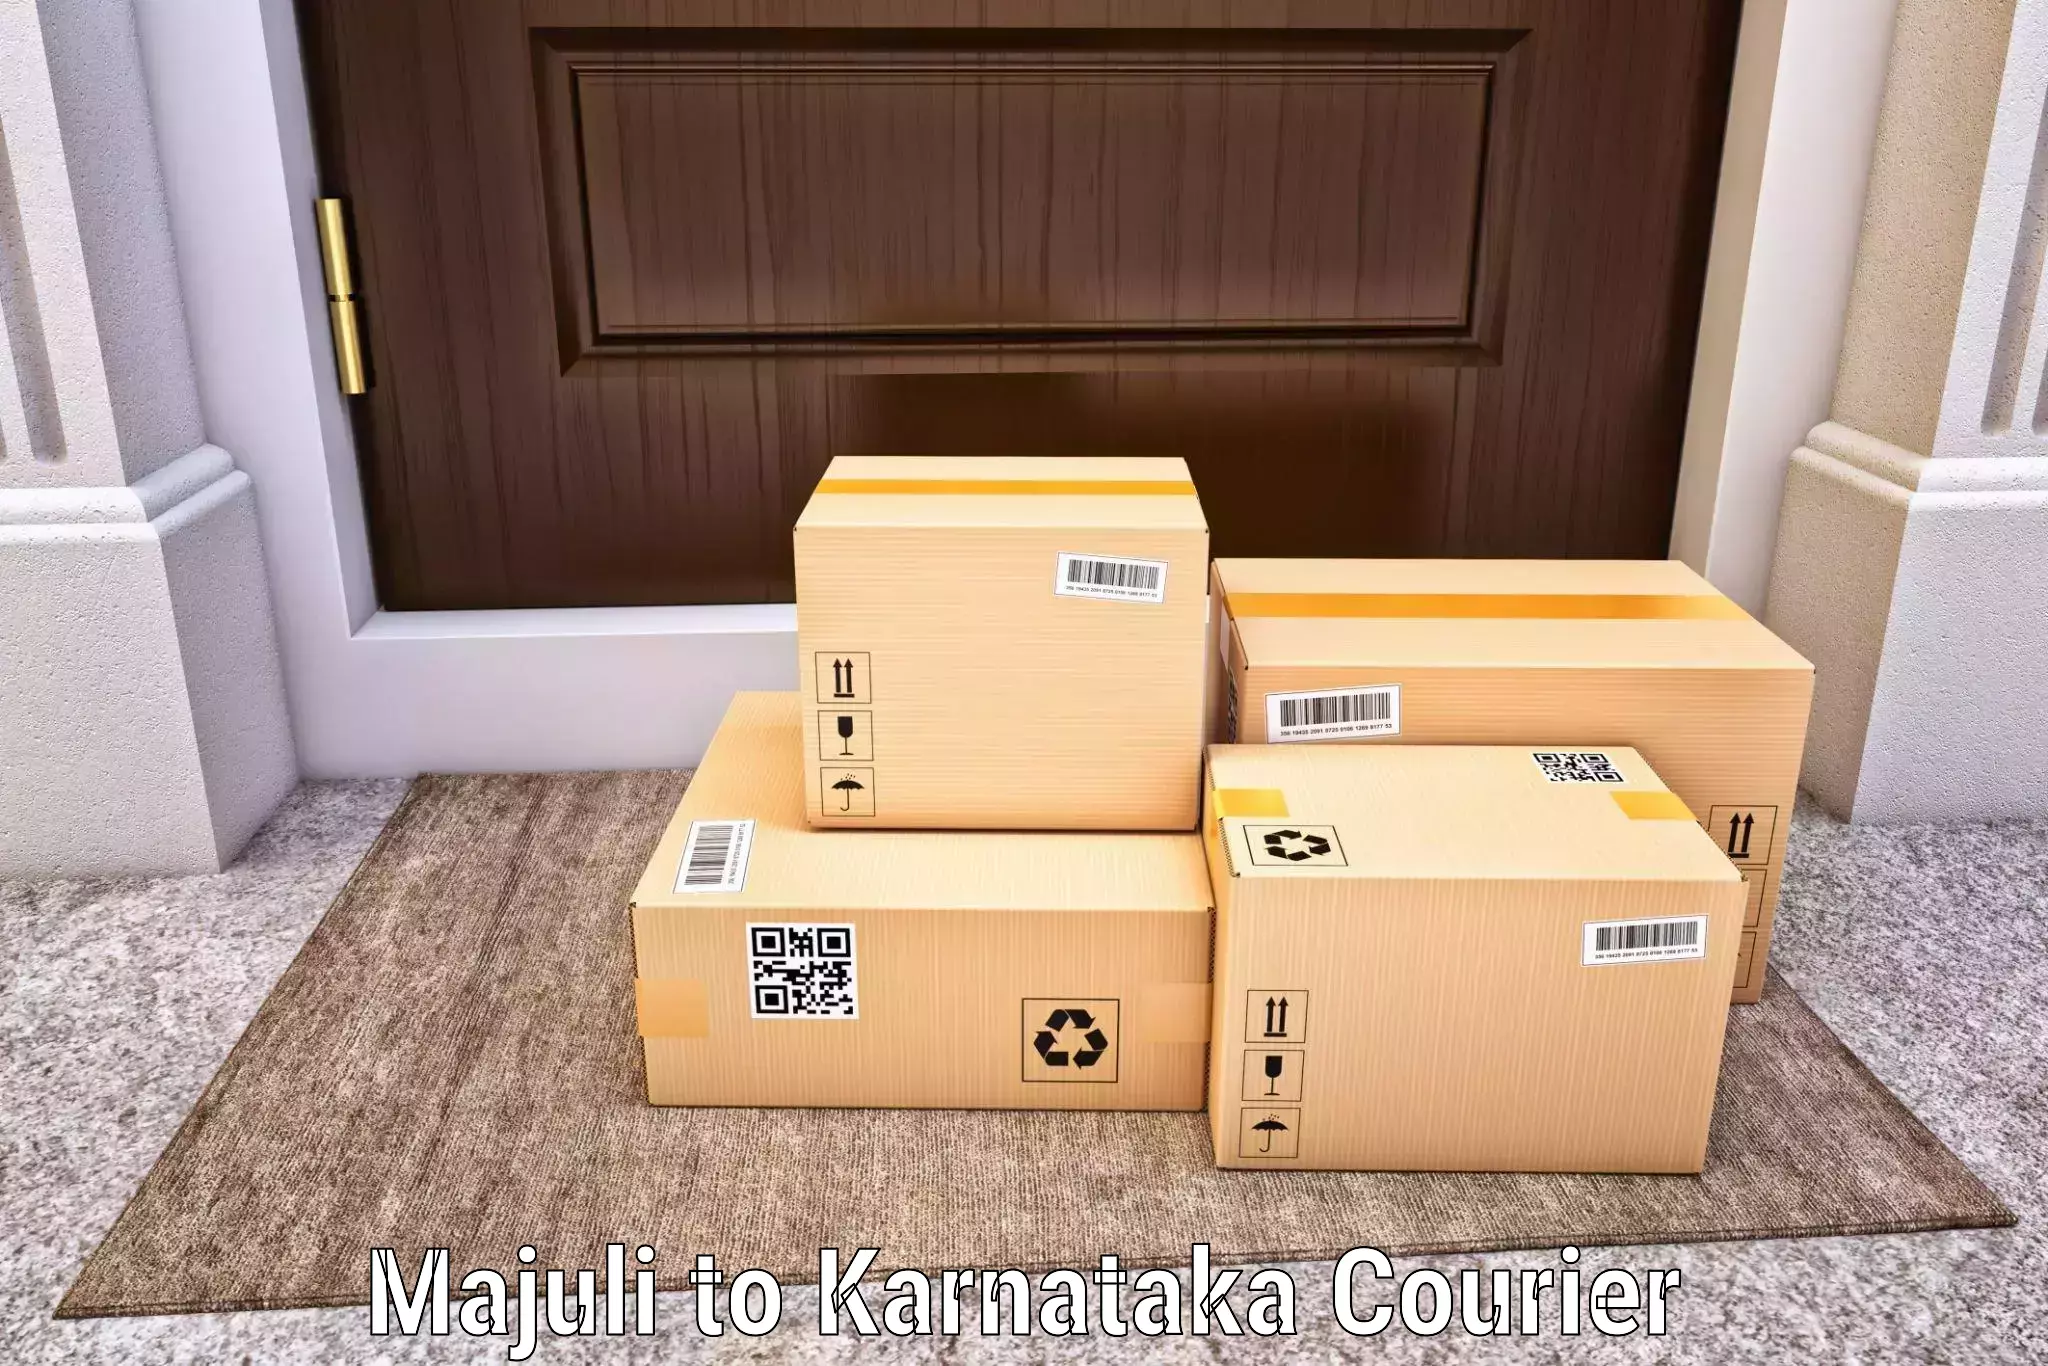 Efficient parcel tracking Majuli to Holalkere